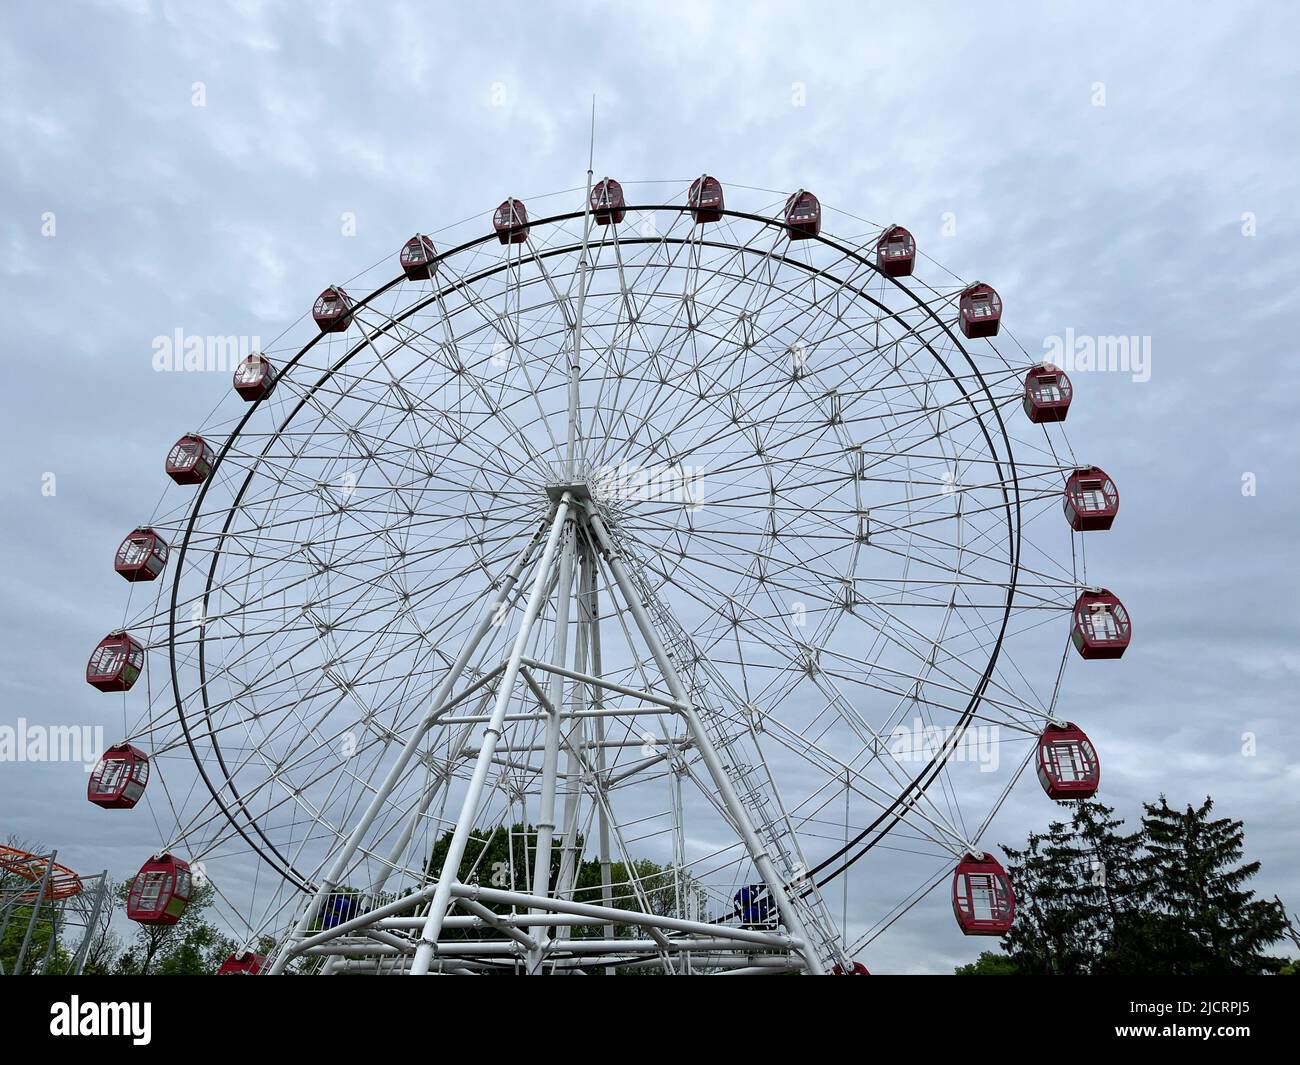 Where to next for giant Ferris wheel?